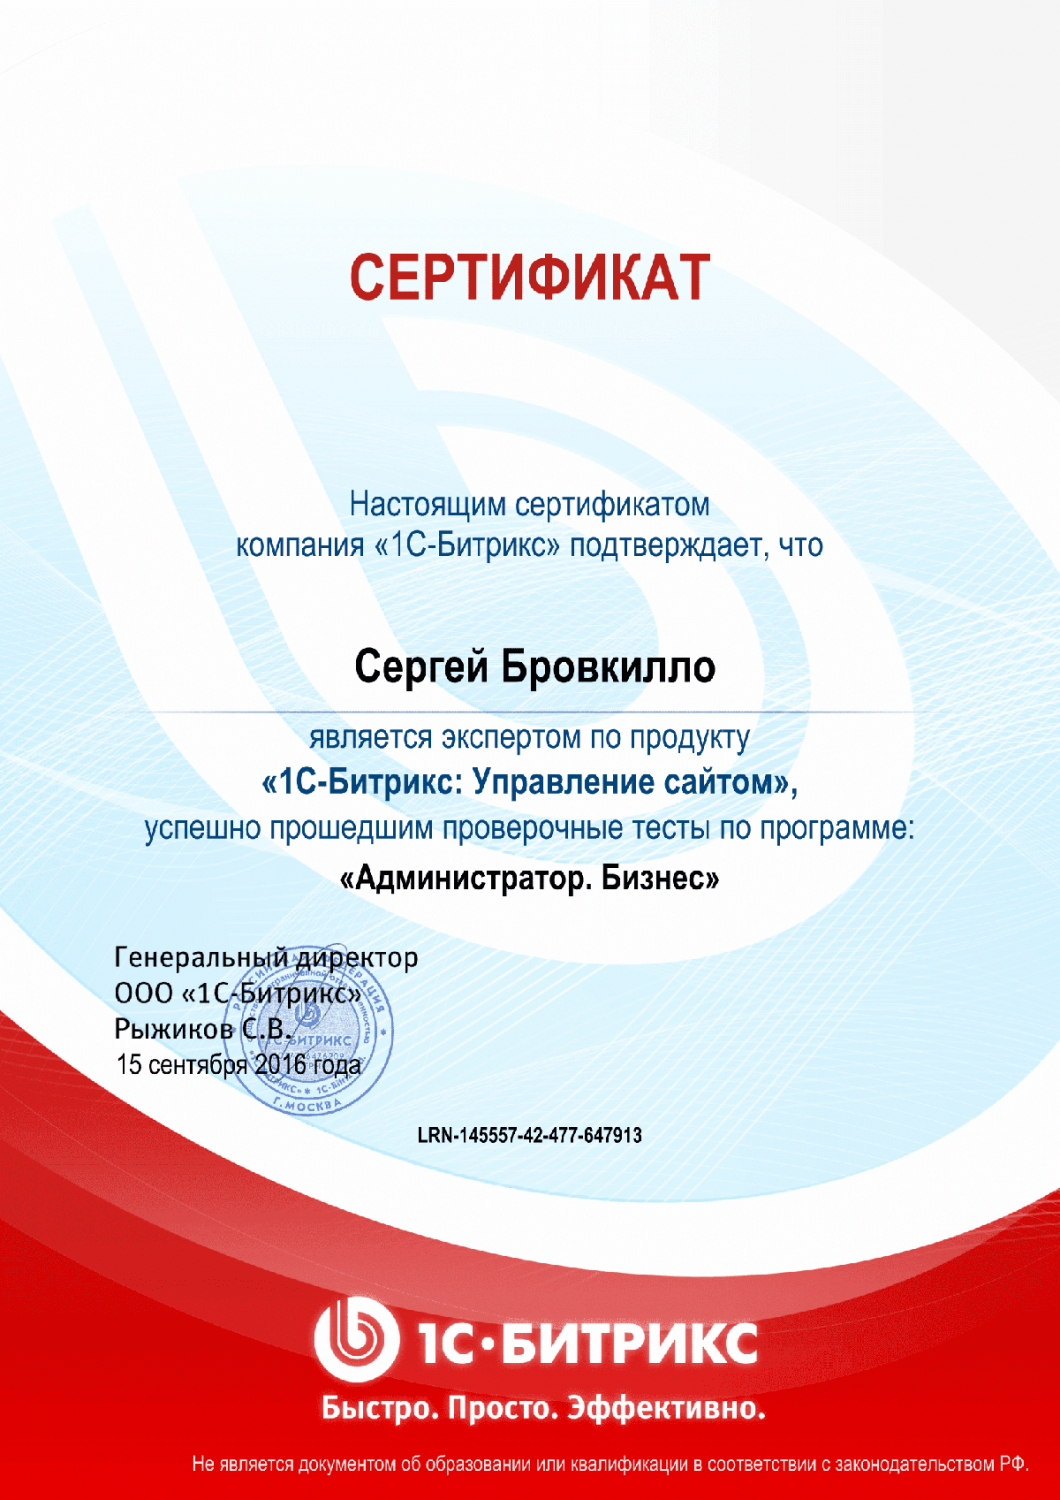 Сертификат эксперта по программе "Администратор. Бизнес" в Калуги